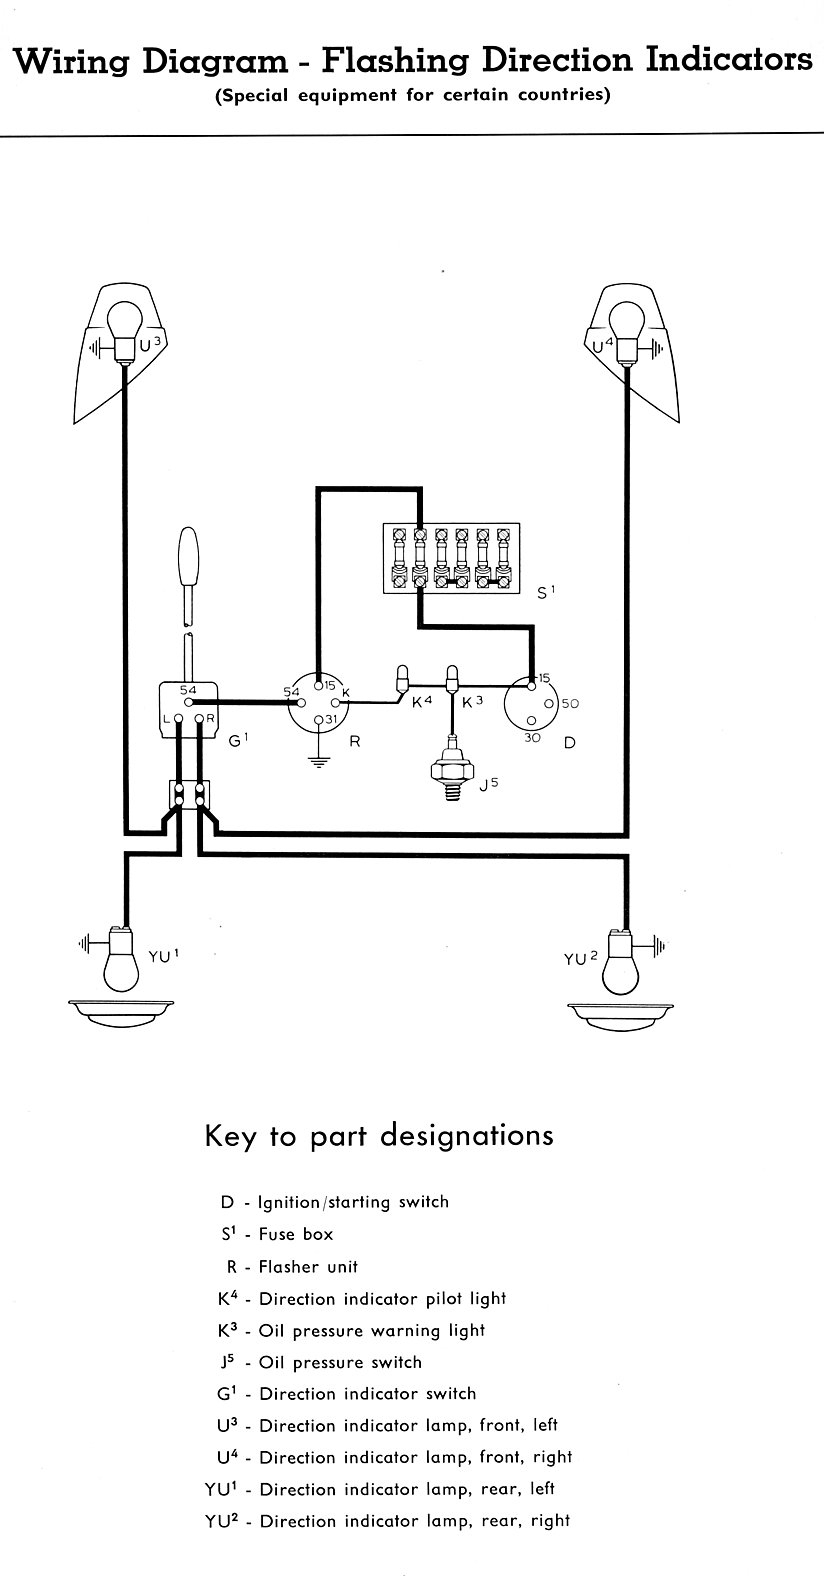 Turn Signal Wiring Diagram - Wiring Diagrams Hubs - Turn Signal Wiring Diagram